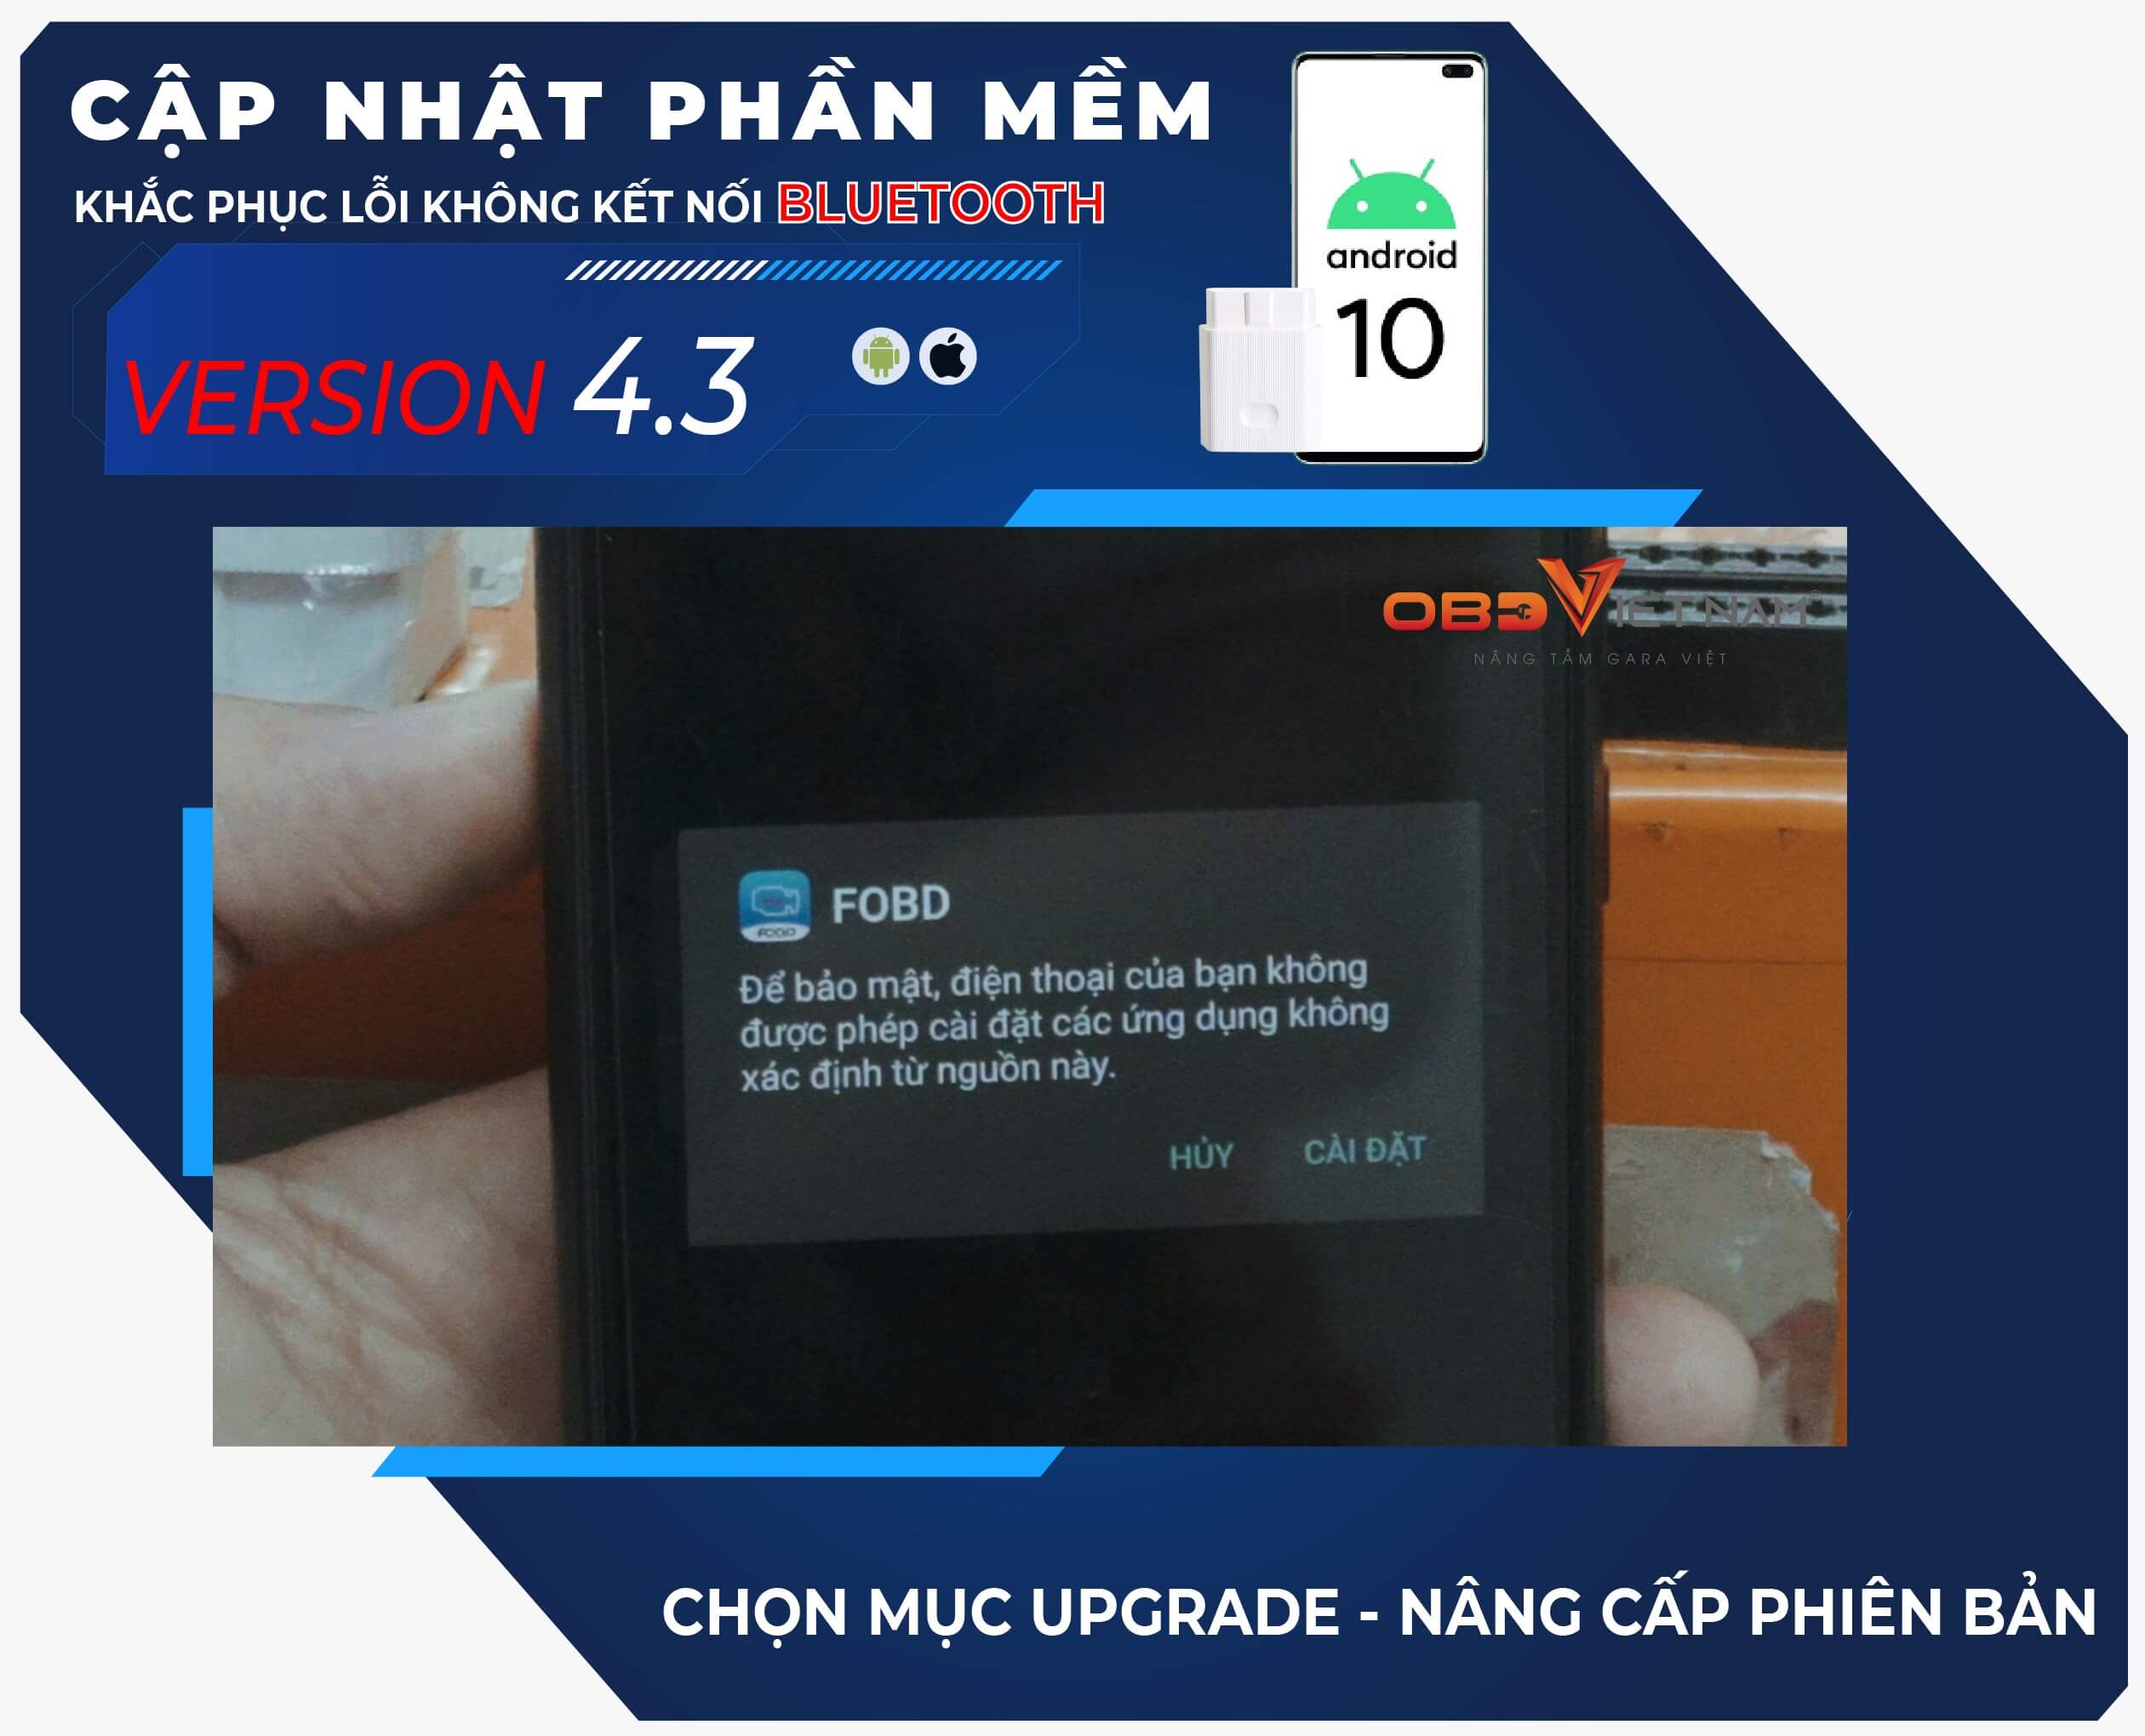 cap-nhat-phan-mem-v4.3-cho-may-chan-doan-fobd12